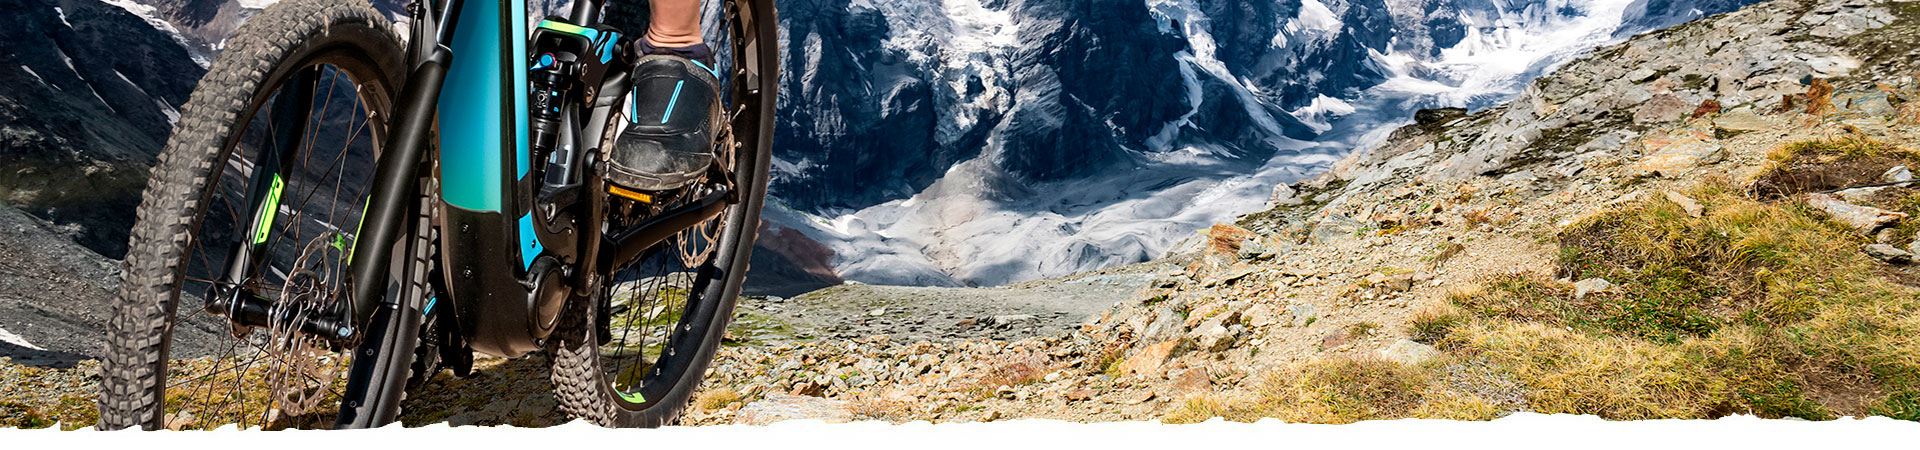 persona en una rutas con bicicletas electricas en una escarpada de piedras con montañas